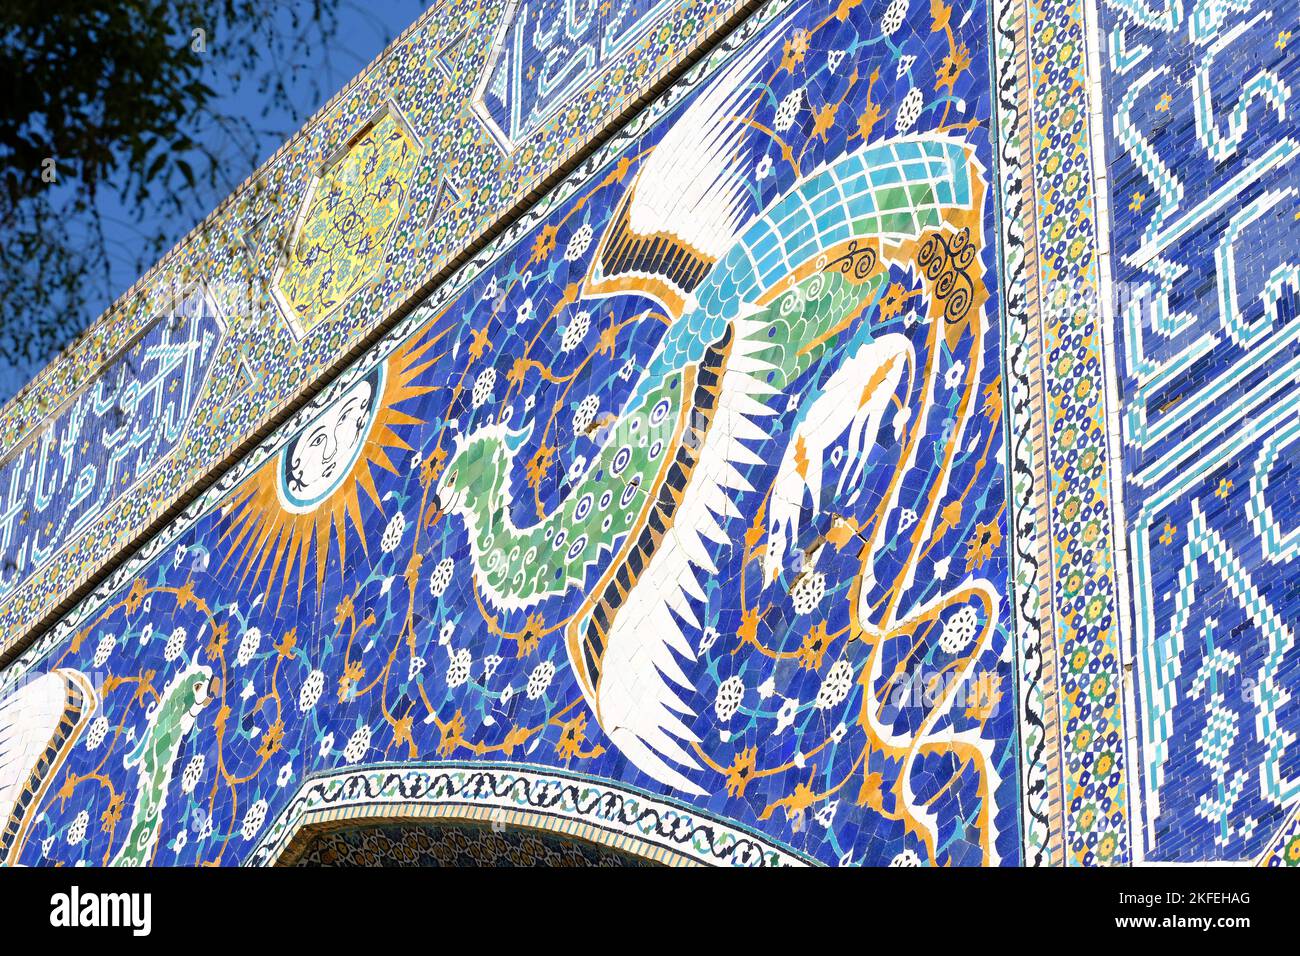 Bukhara Usbekistan - die Madrasa von Nadir Divan Beghi zeigt ungewöhnliche figurative Kunst, die simurgh (persische fliegende Kreaturen) und die mongolische Sonne zeigt Stockfoto